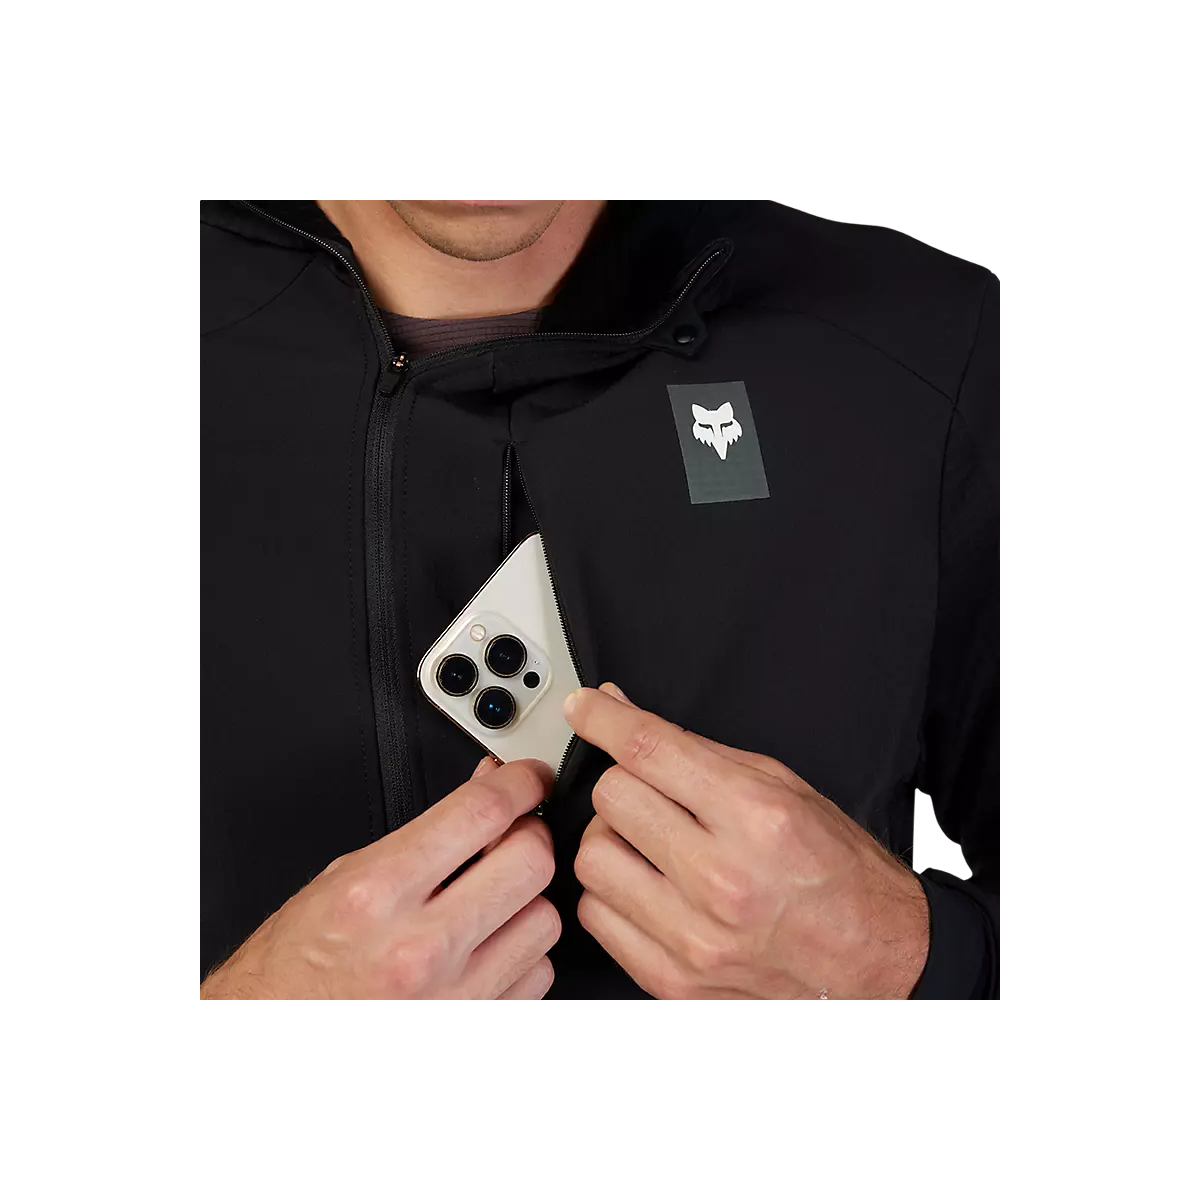 bolsillo de la Camiseta / Sudadera técnica con capucha Fox Defend Thermal invierno 31480-001 color negro paravientos